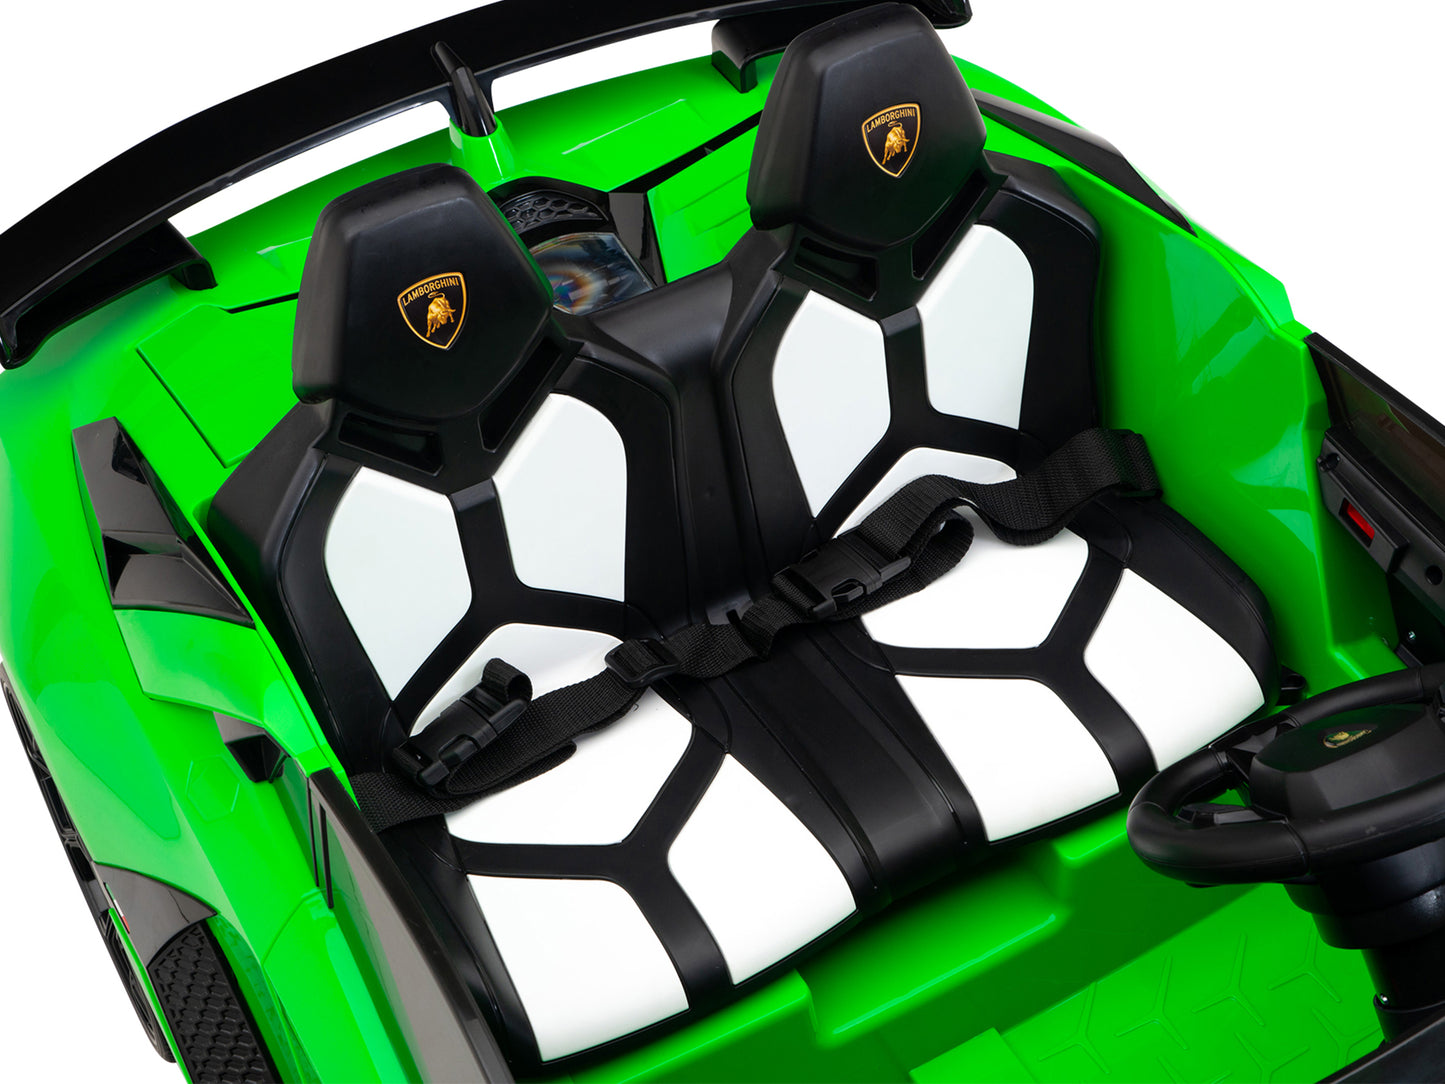 24V Lamborghini SVJ Ride On DRIFT Car with Remote Control - Green